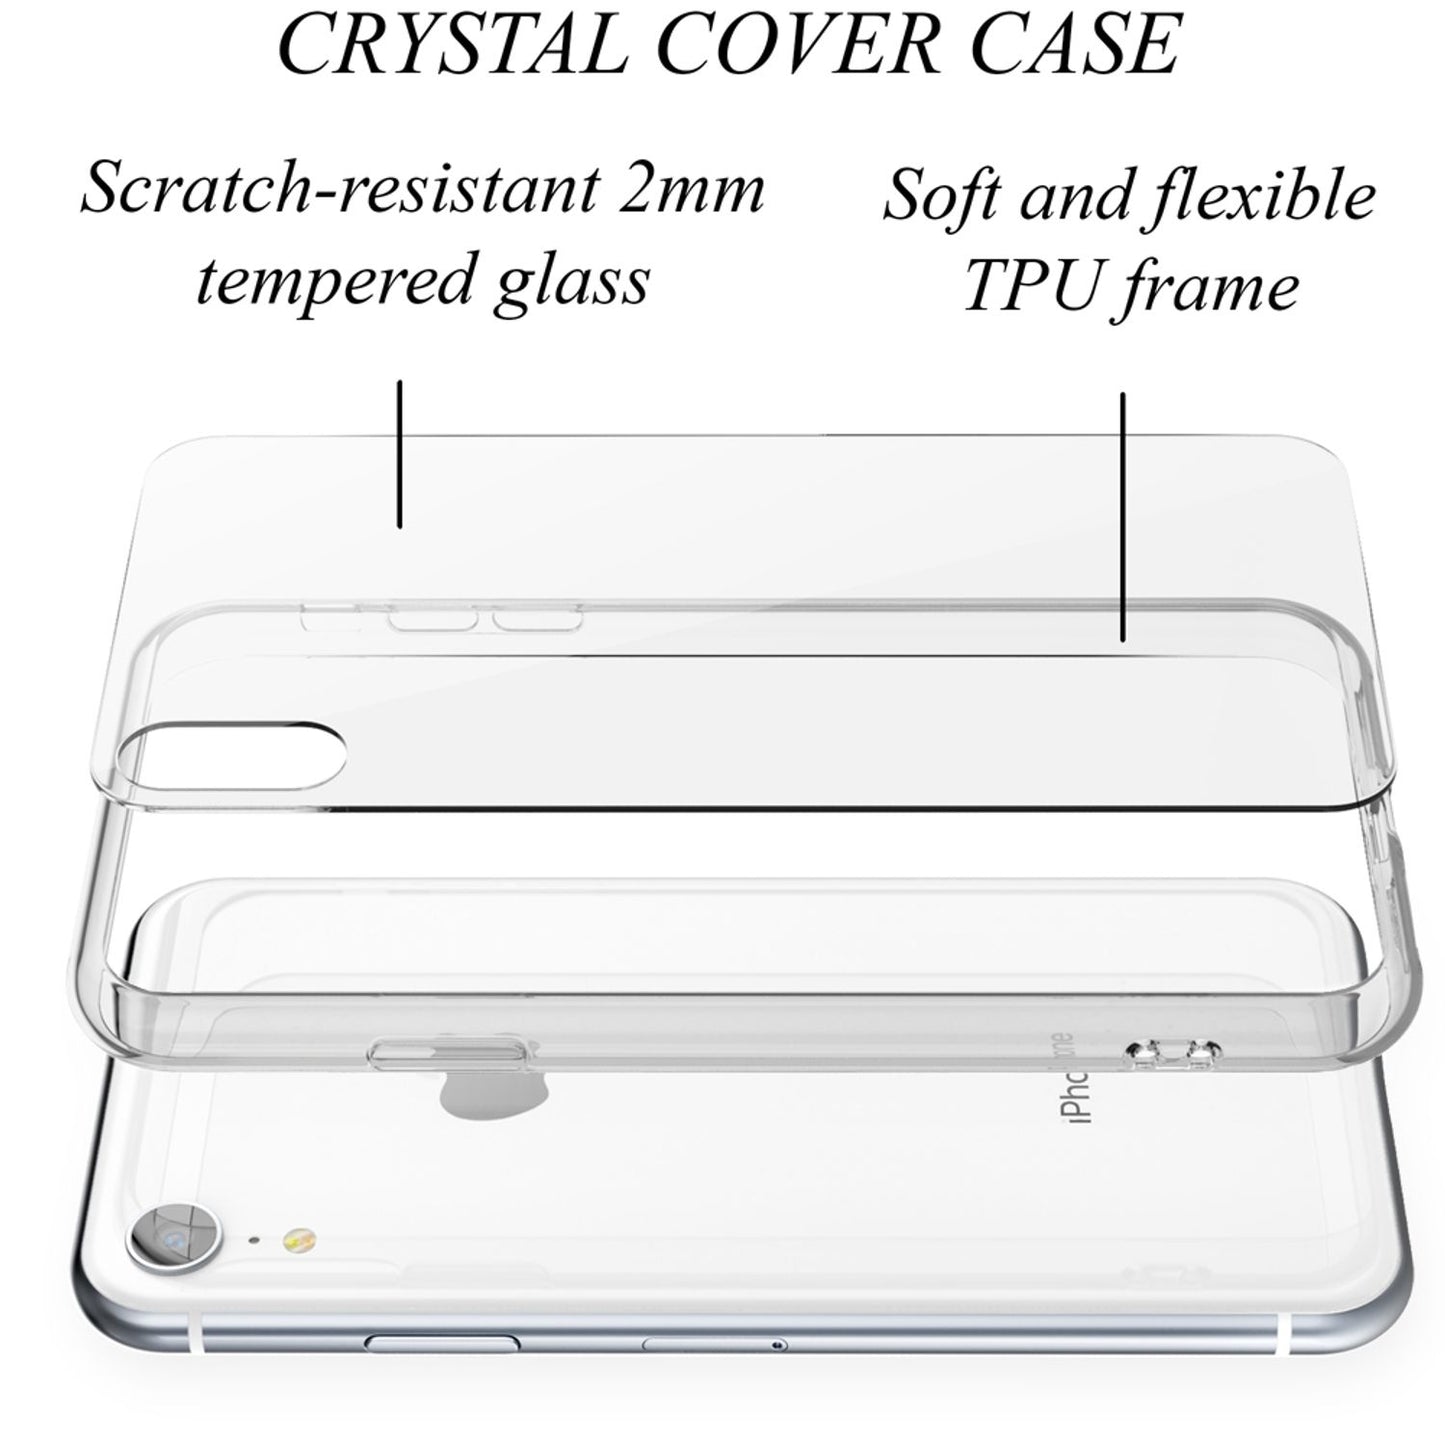 NALIA Hartglas Handyhülle für iPhone XR, Schutz Case Cover Tasche Bumper Schale Etui